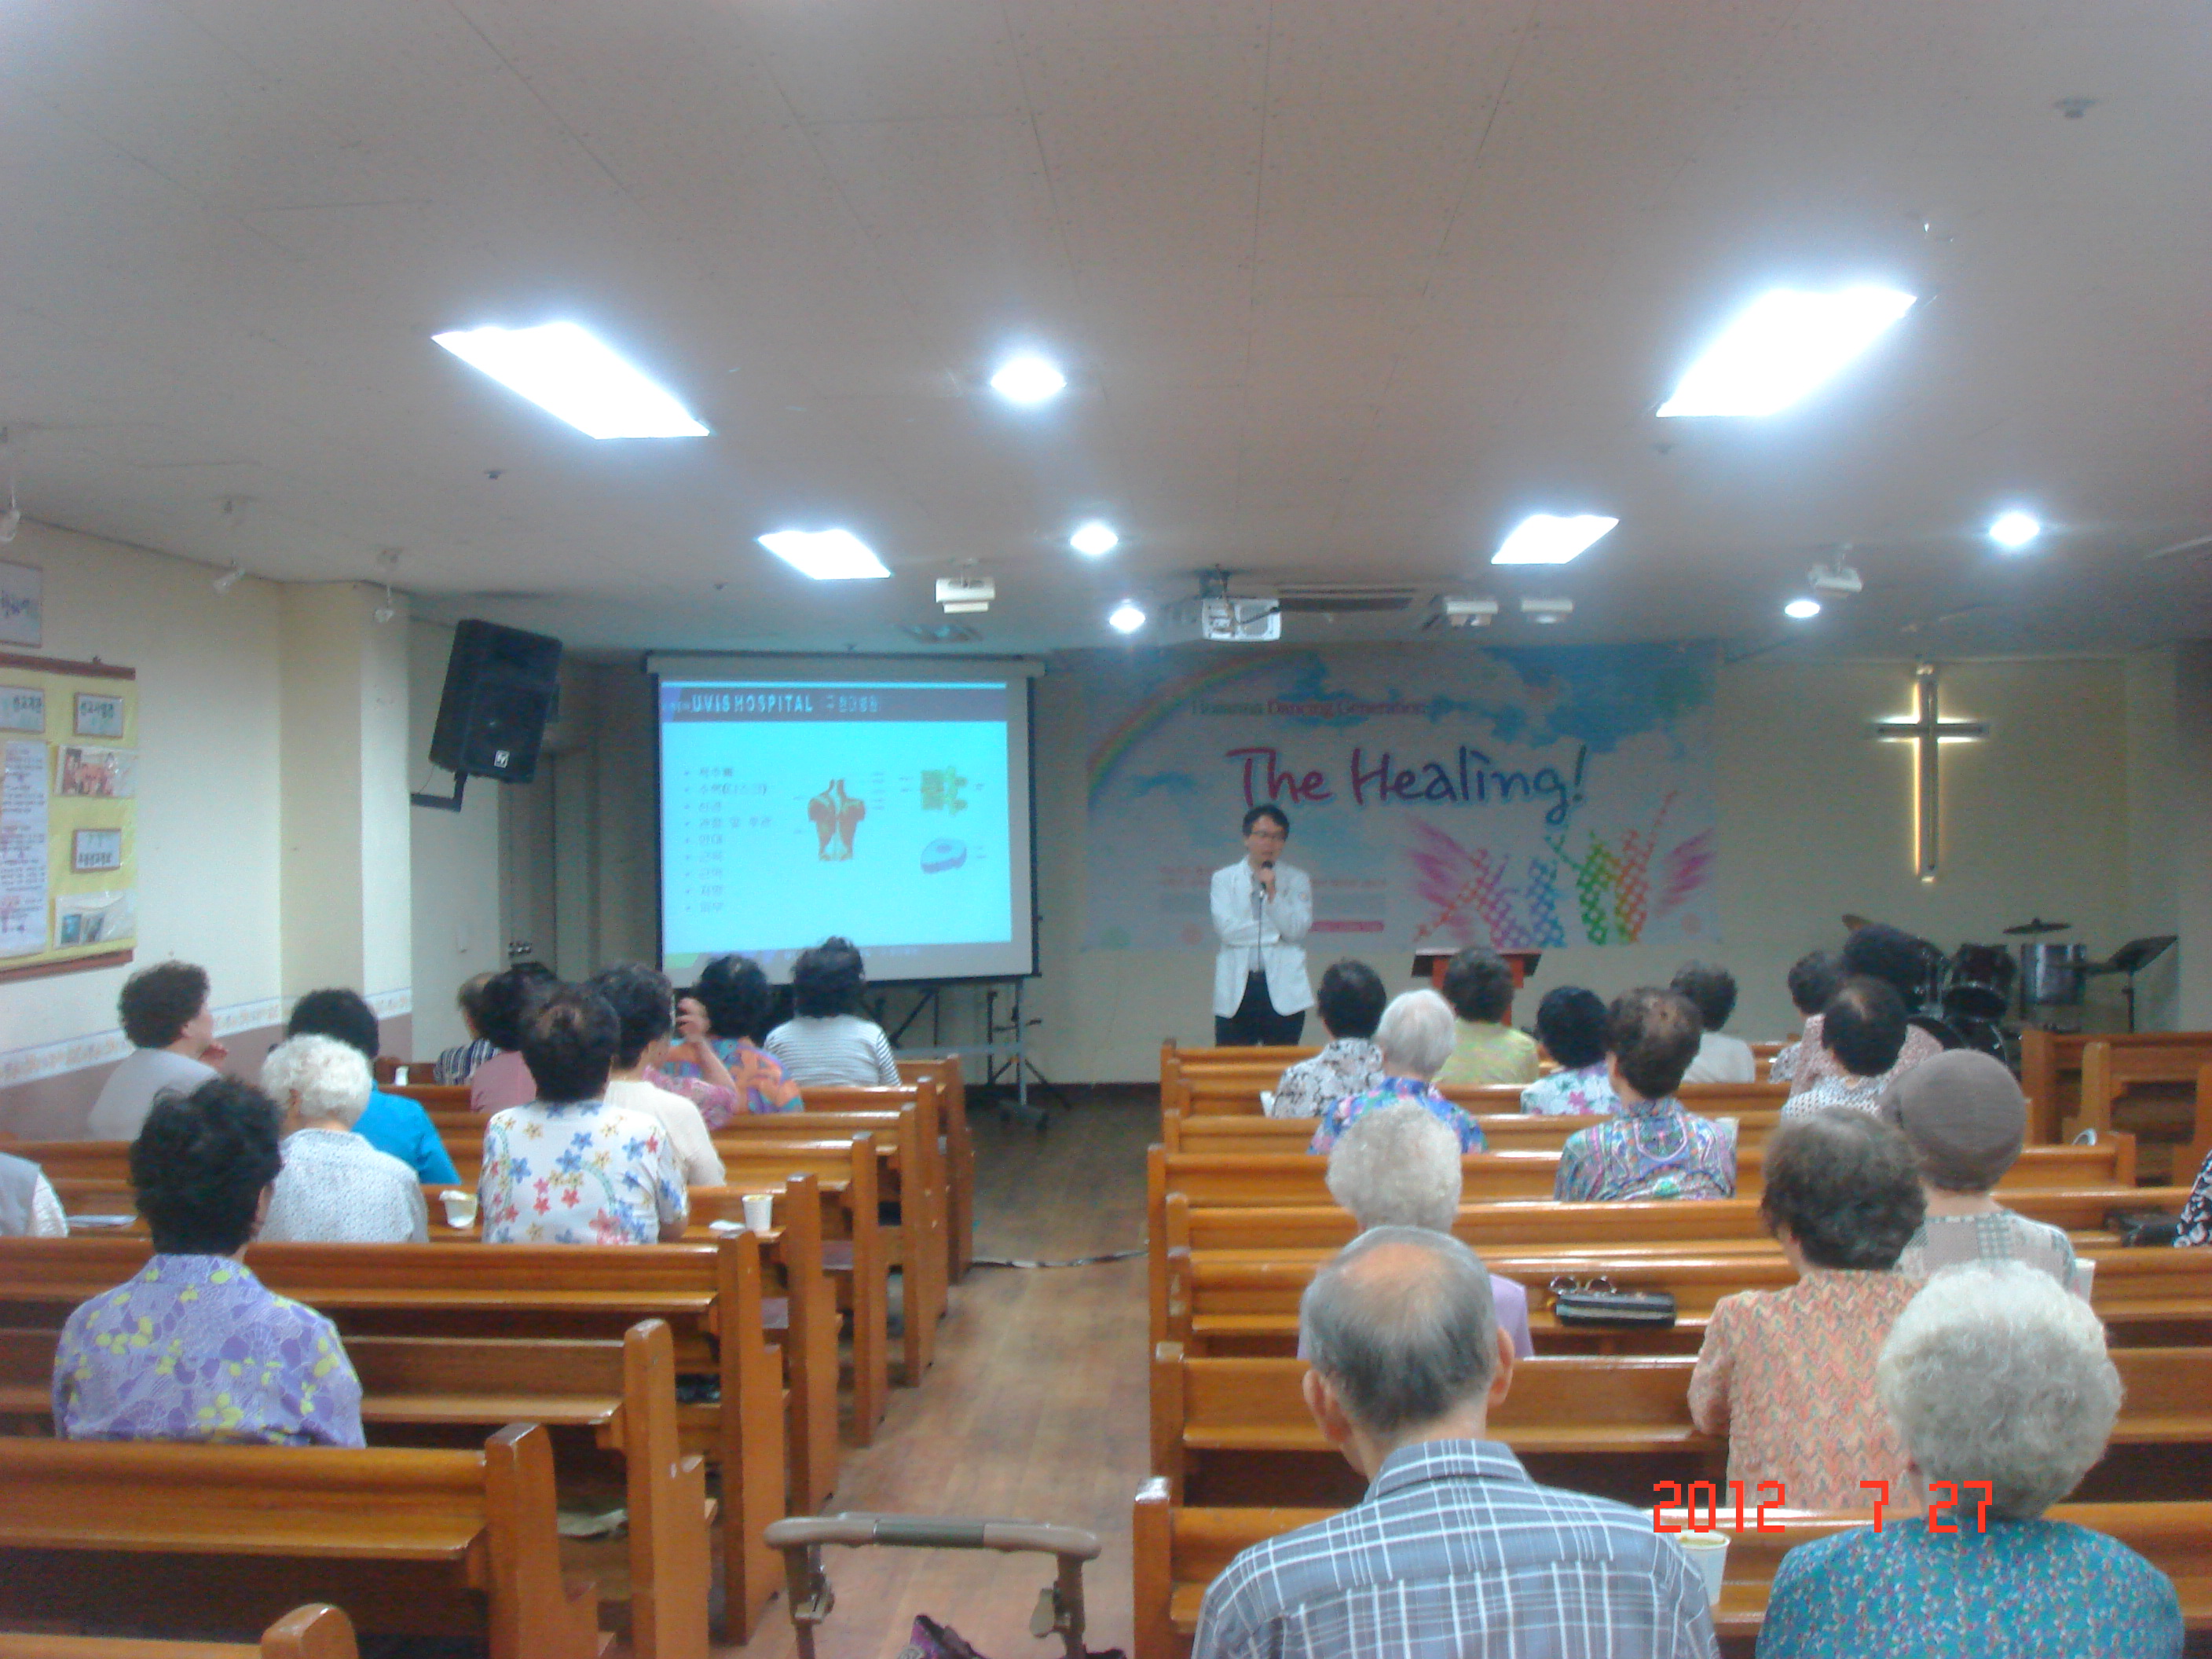 2012년 7월 27일 - 호산나교회 의료봉사 게시글의 4번째 첨부파일입니다.